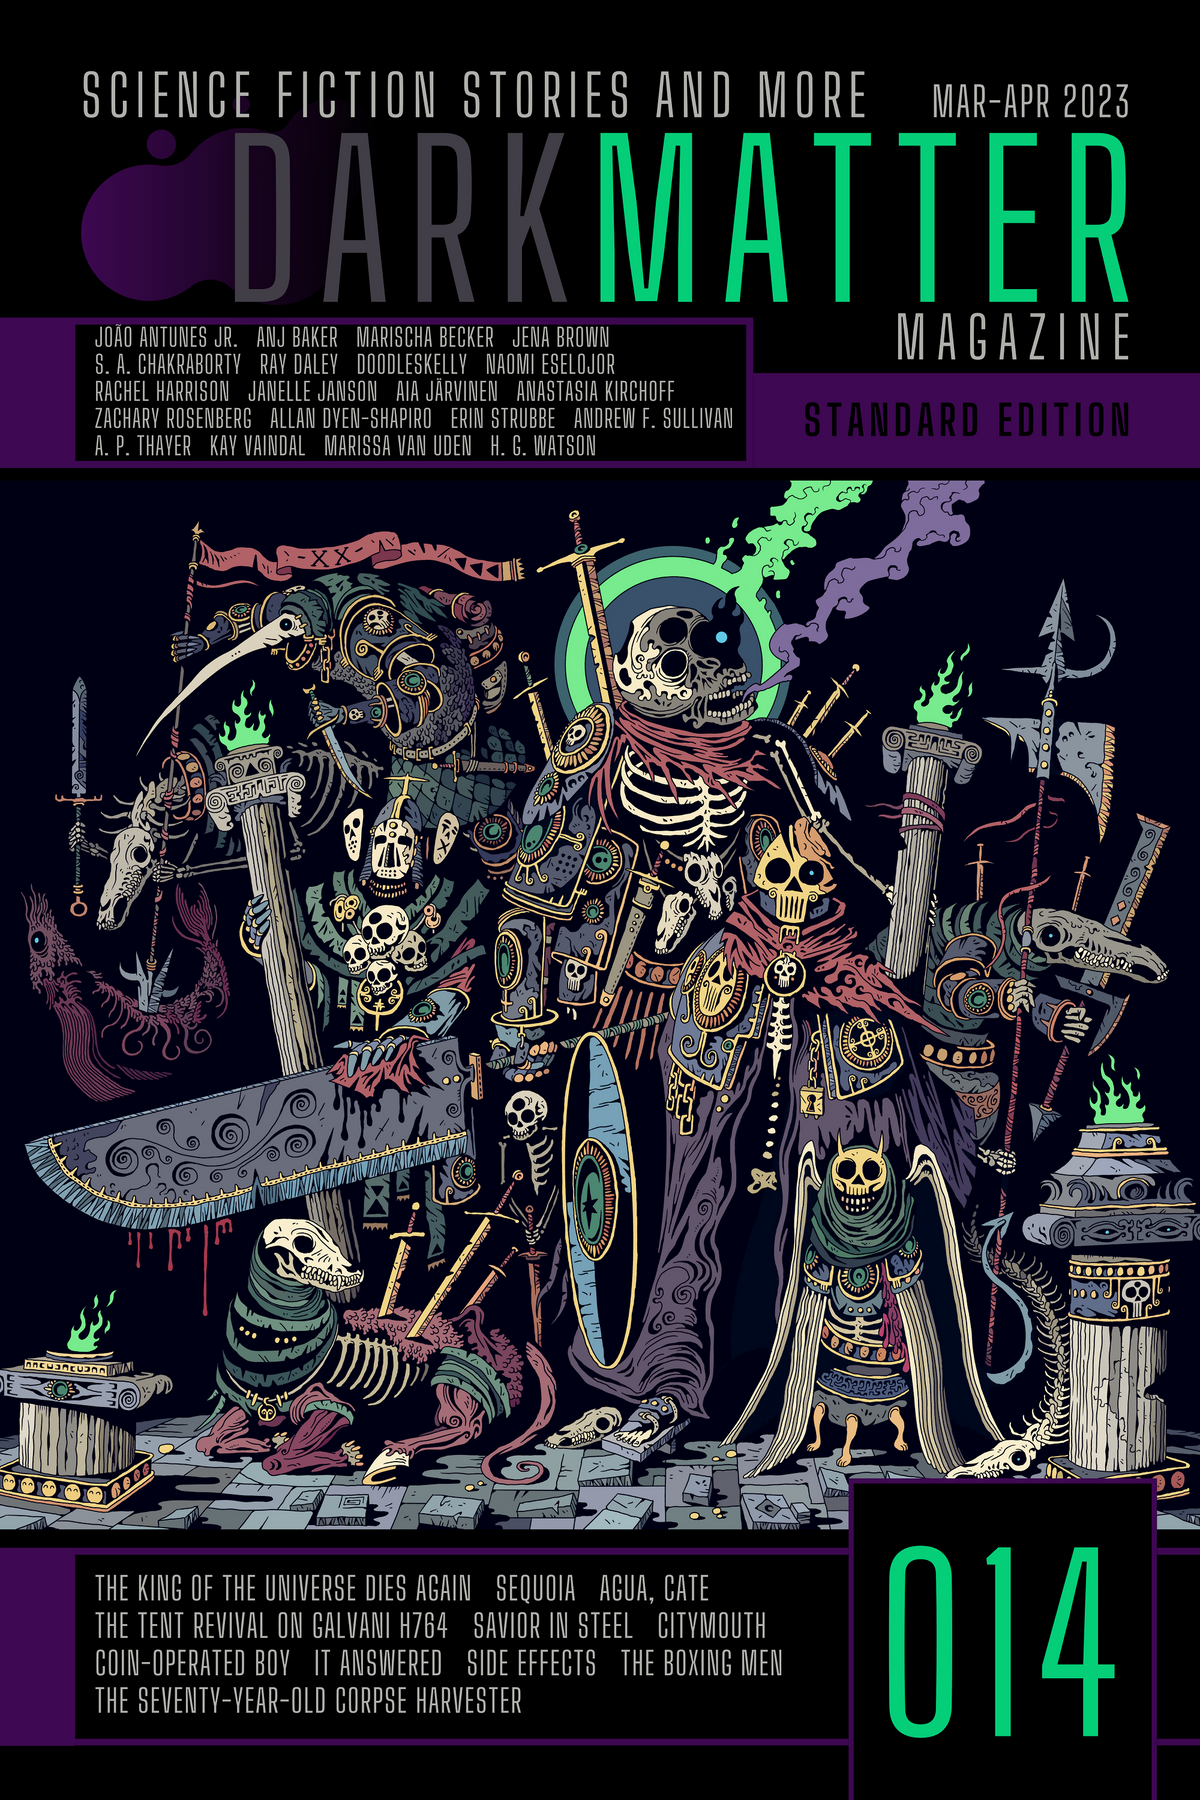 Dark Matter Magazine Issue 014 Mar-Apr 2023